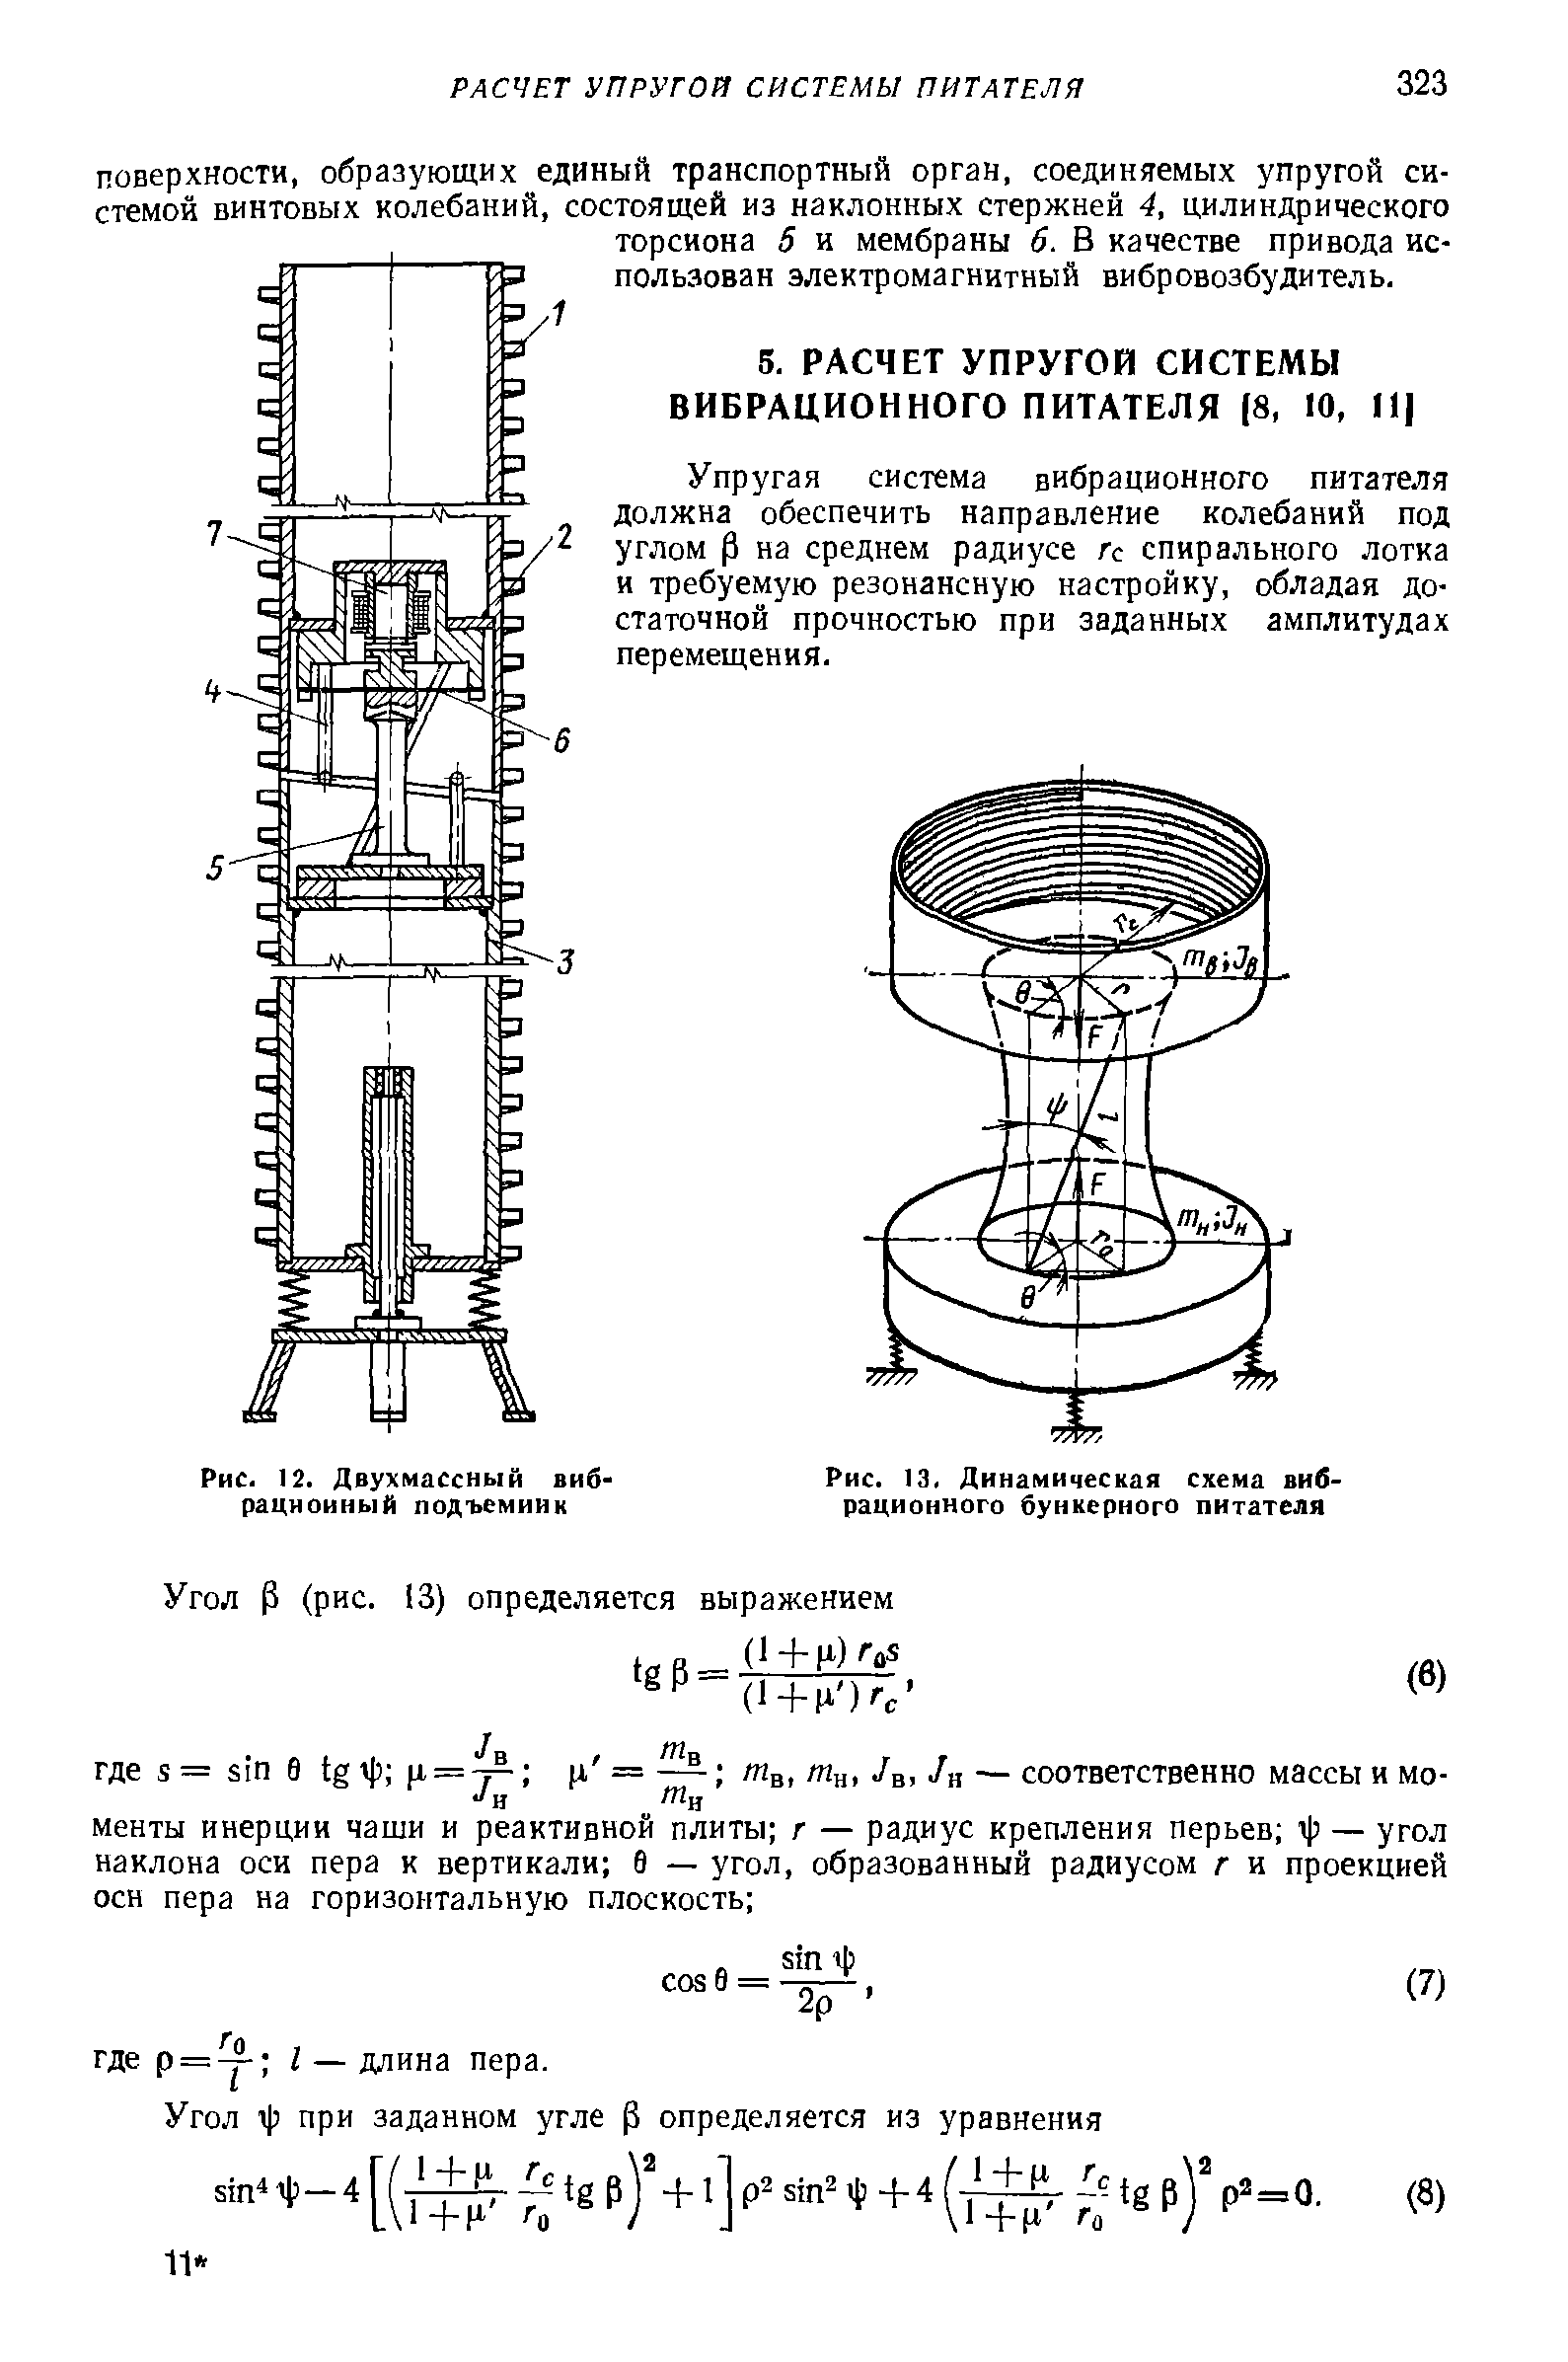 Рис. 13. Динамическая схема вибрационного бункерного питателя
